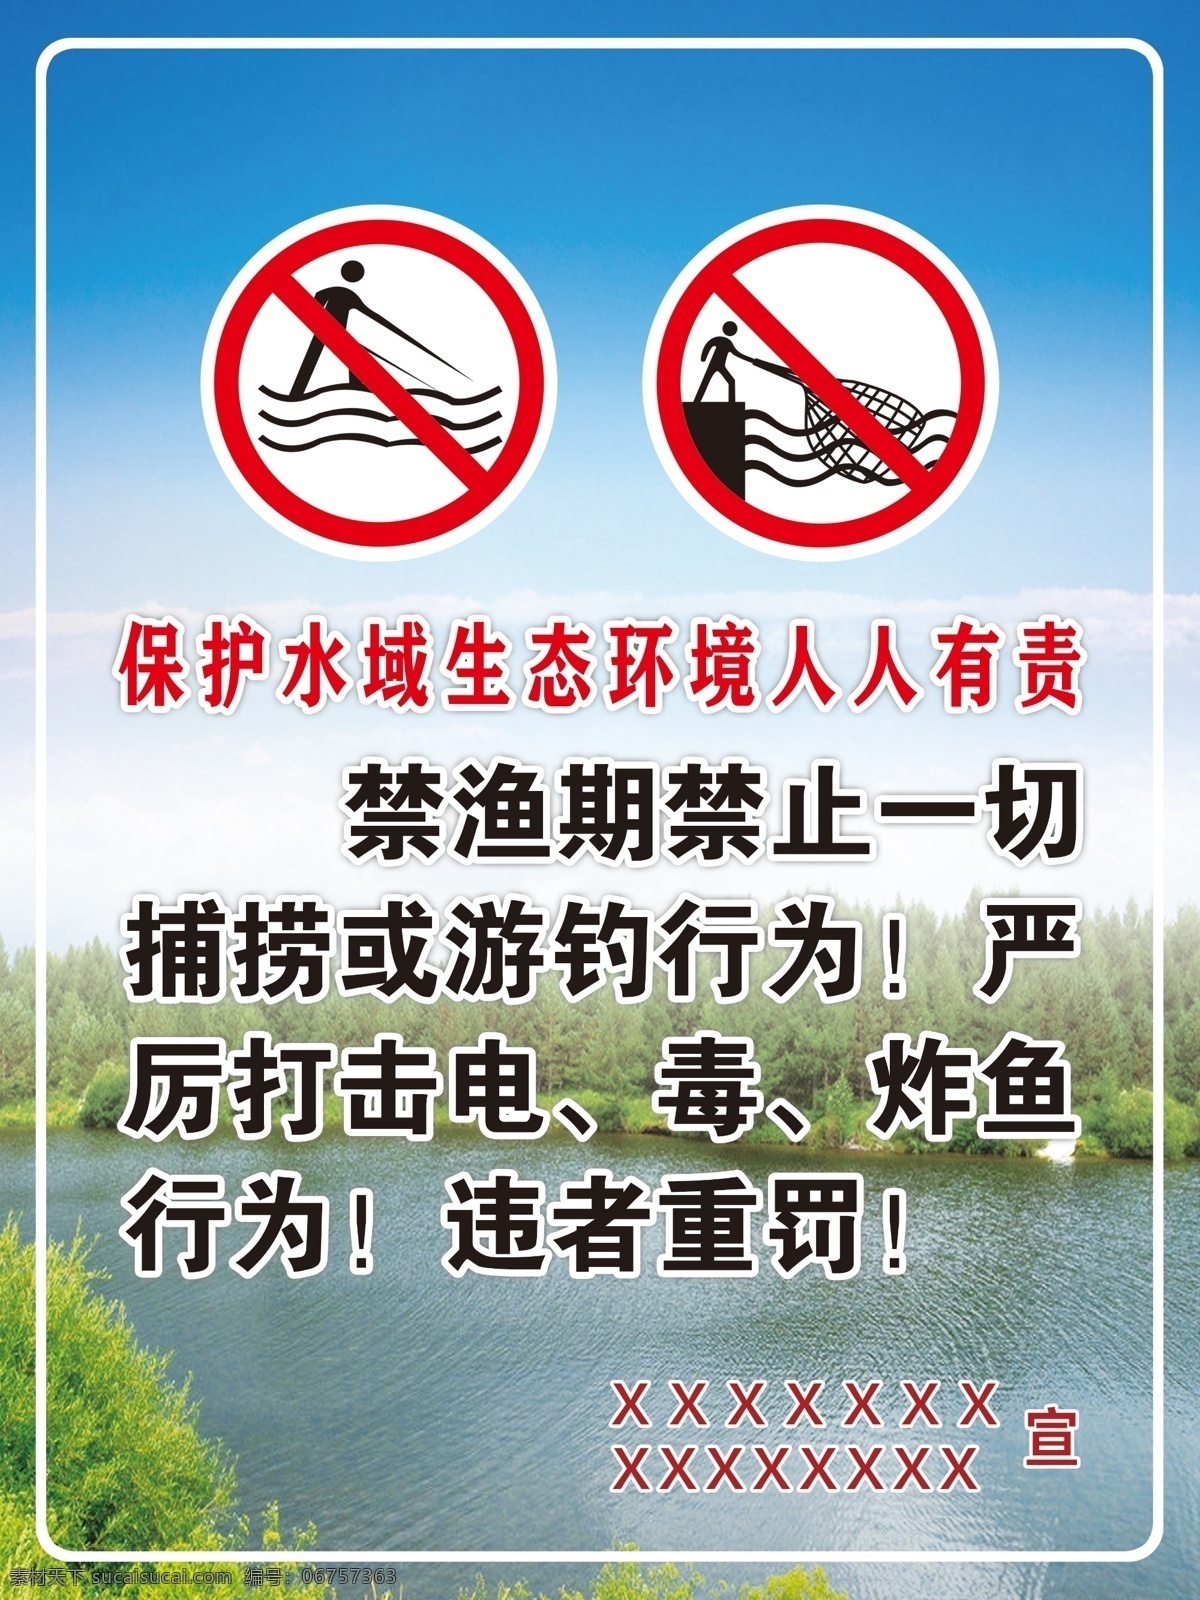 请勿捕鱼 保持水生态 禁渔标语 禁止捕捞鱼